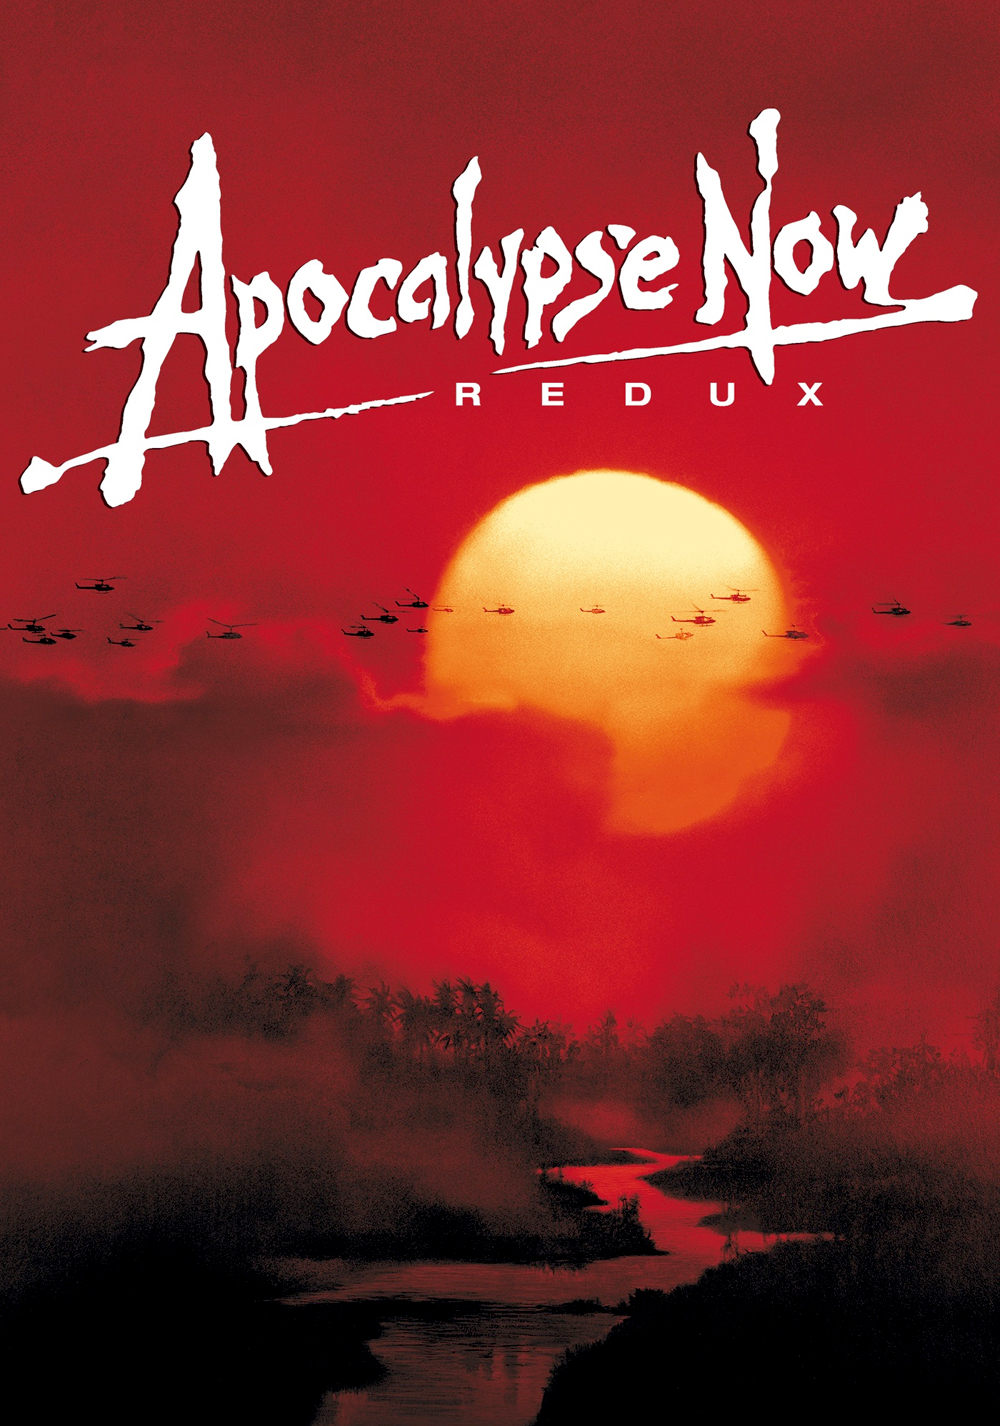 Apocalypse Now Redux Art